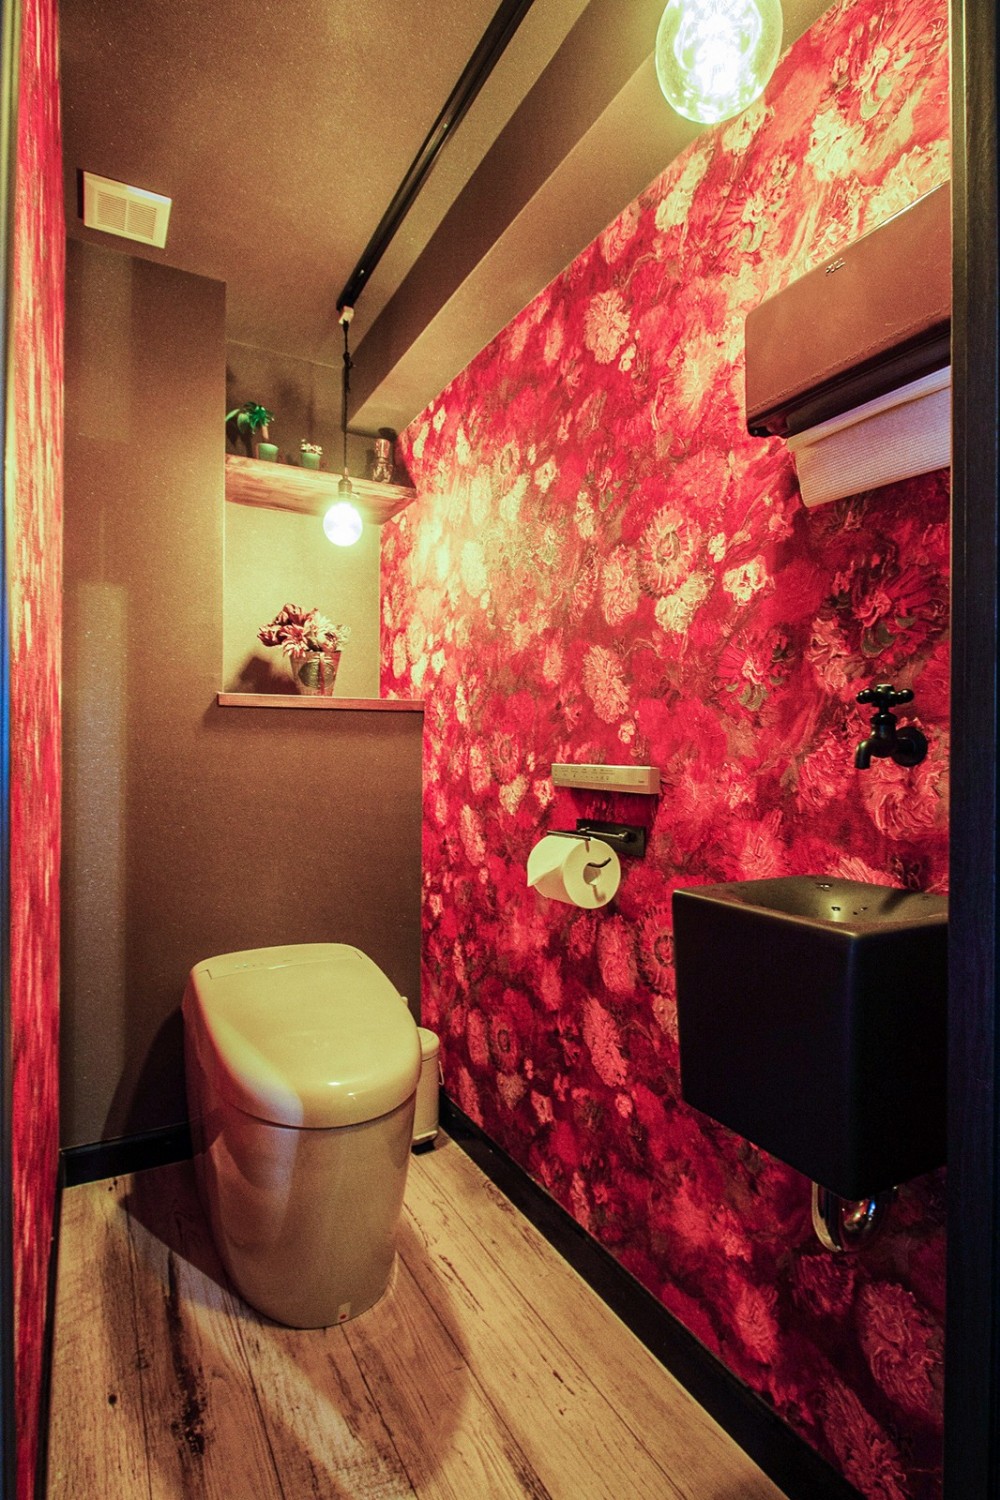 Utopia - the house of dreams - (手洗い器をダークトーンに抑えて大胆な壁紙を採用。花束に包まれたようなトイレ空間に。)